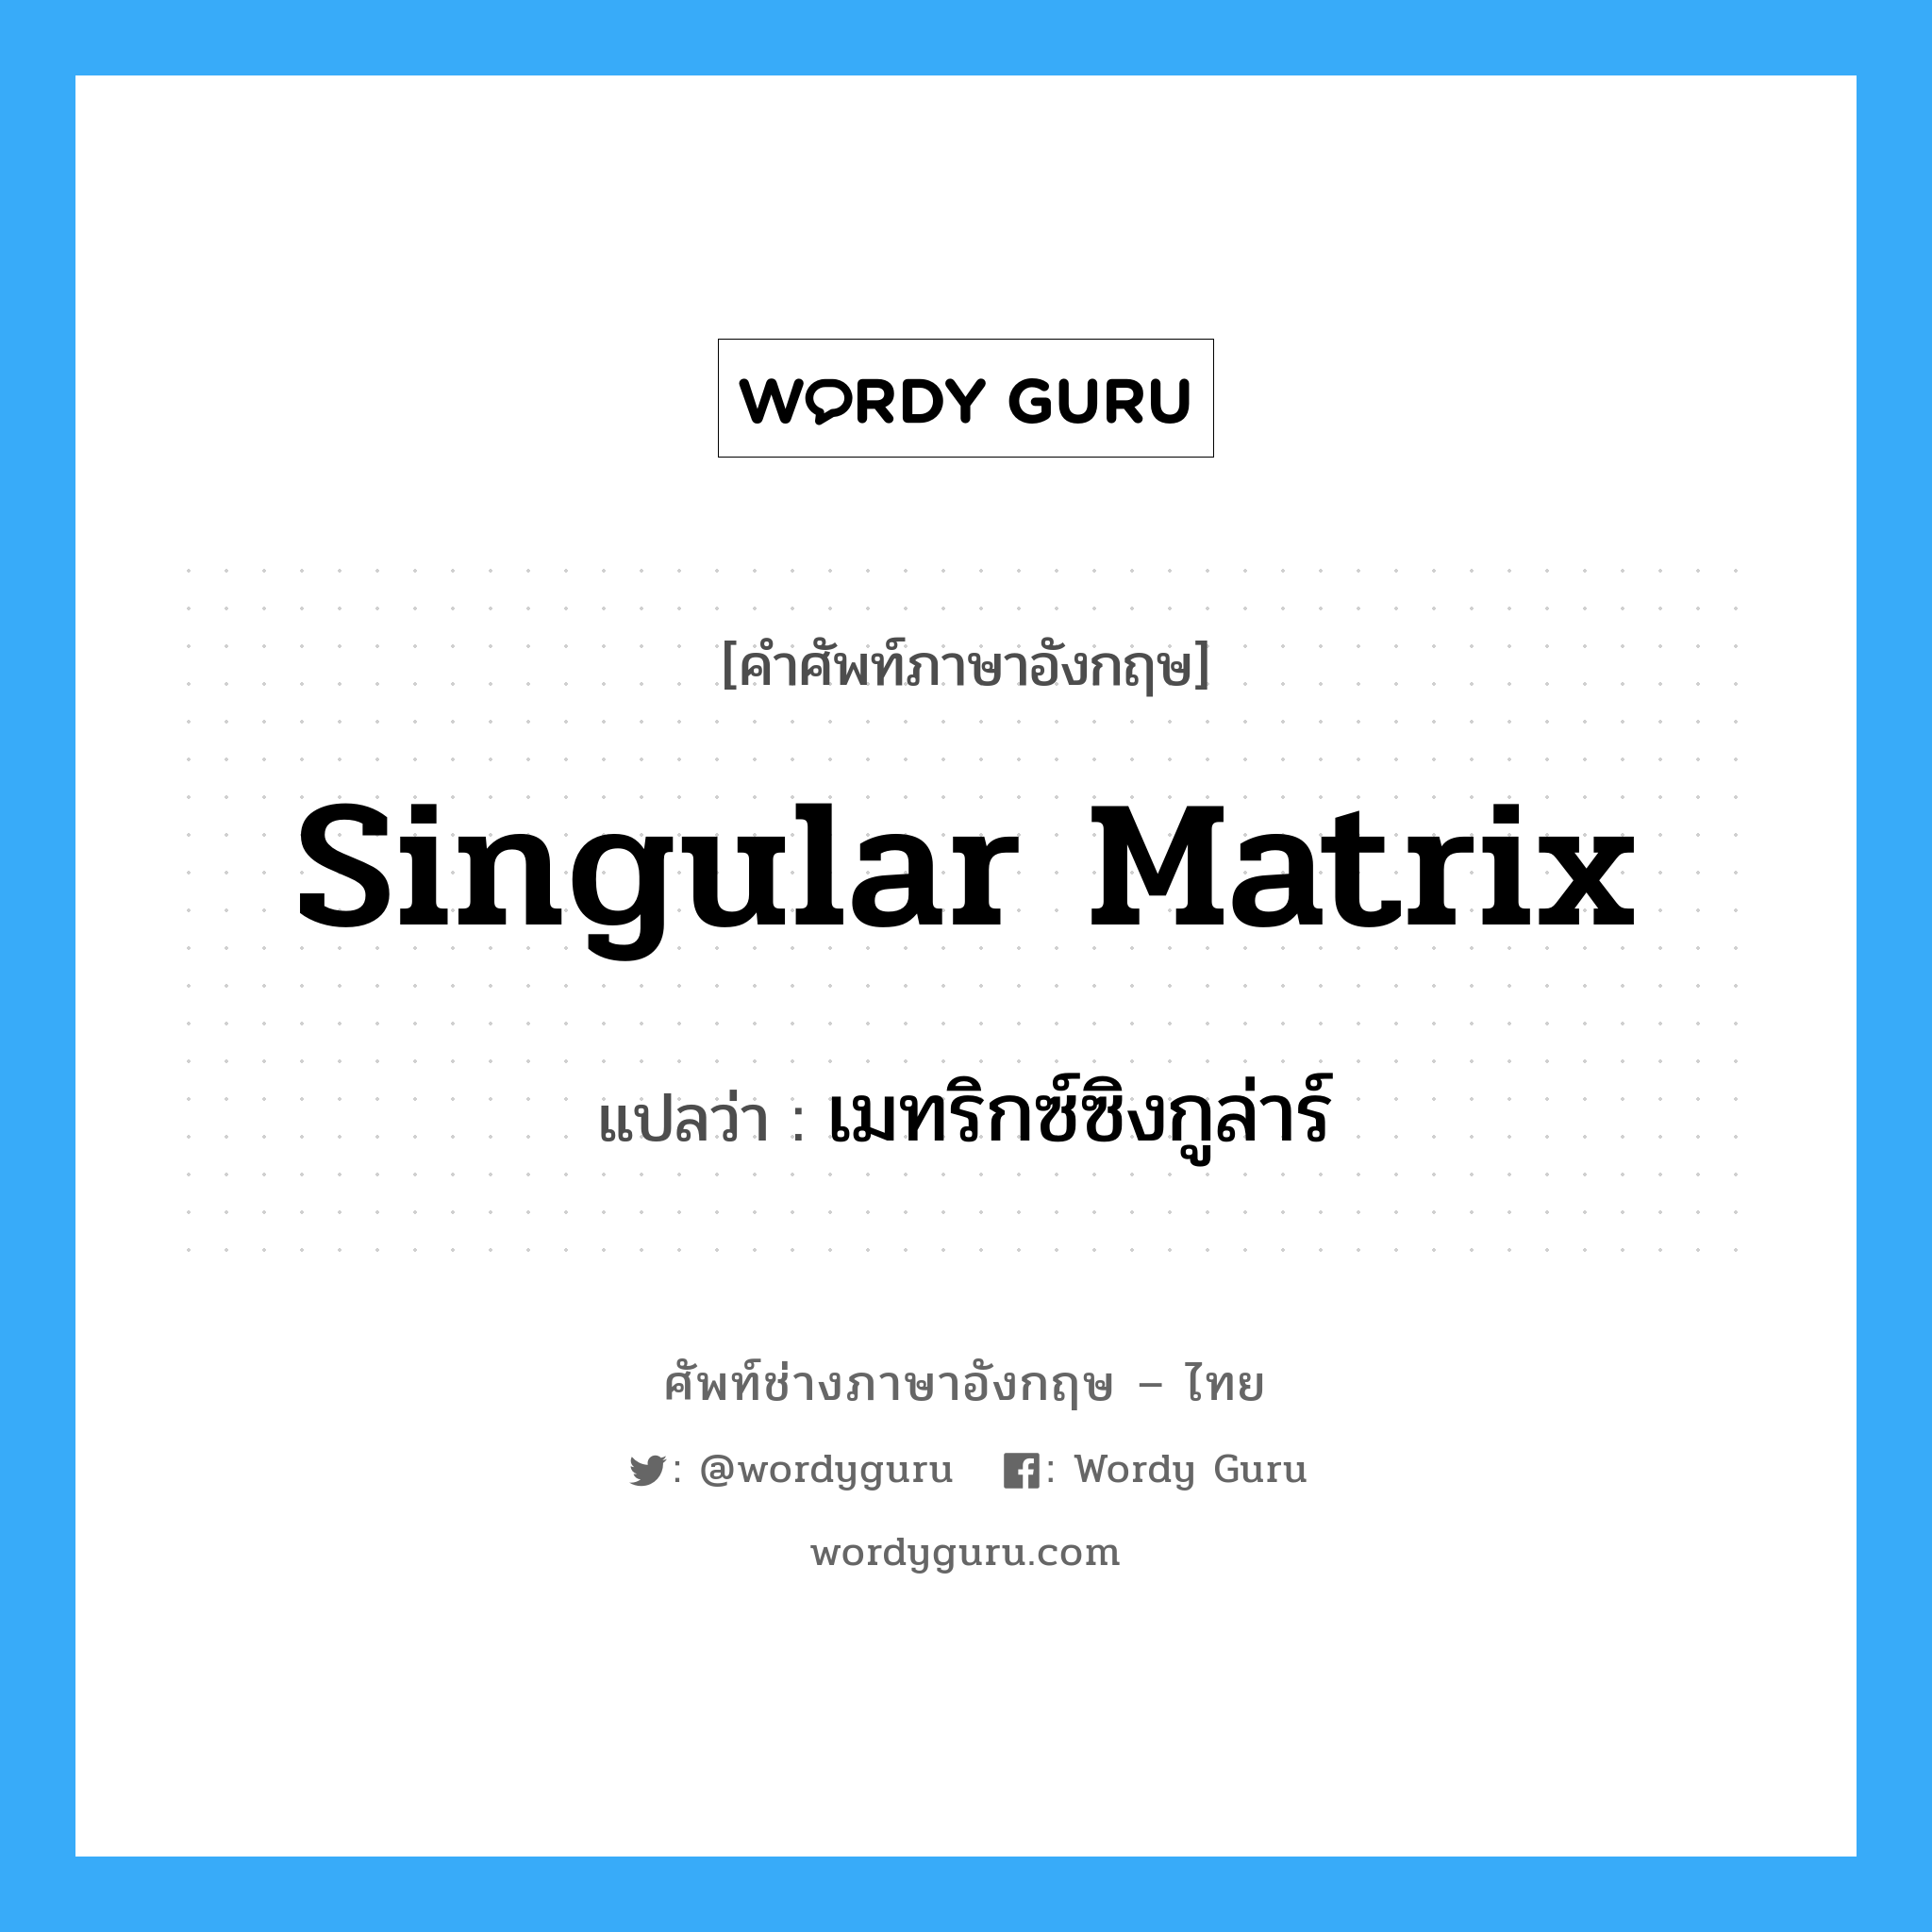 เมทริกซ์ซิงกูล่าร์ ภาษาอังกฤษ?, คำศัพท์ช่างภาษาอังกฤษ - ไทย เมทริกซ์ซิงกูล่าร์ คำศัพท์ภาษาอังกฤษ เมทริกซ์ซิงกูล่าร์ แปลว่า Singular Matrix